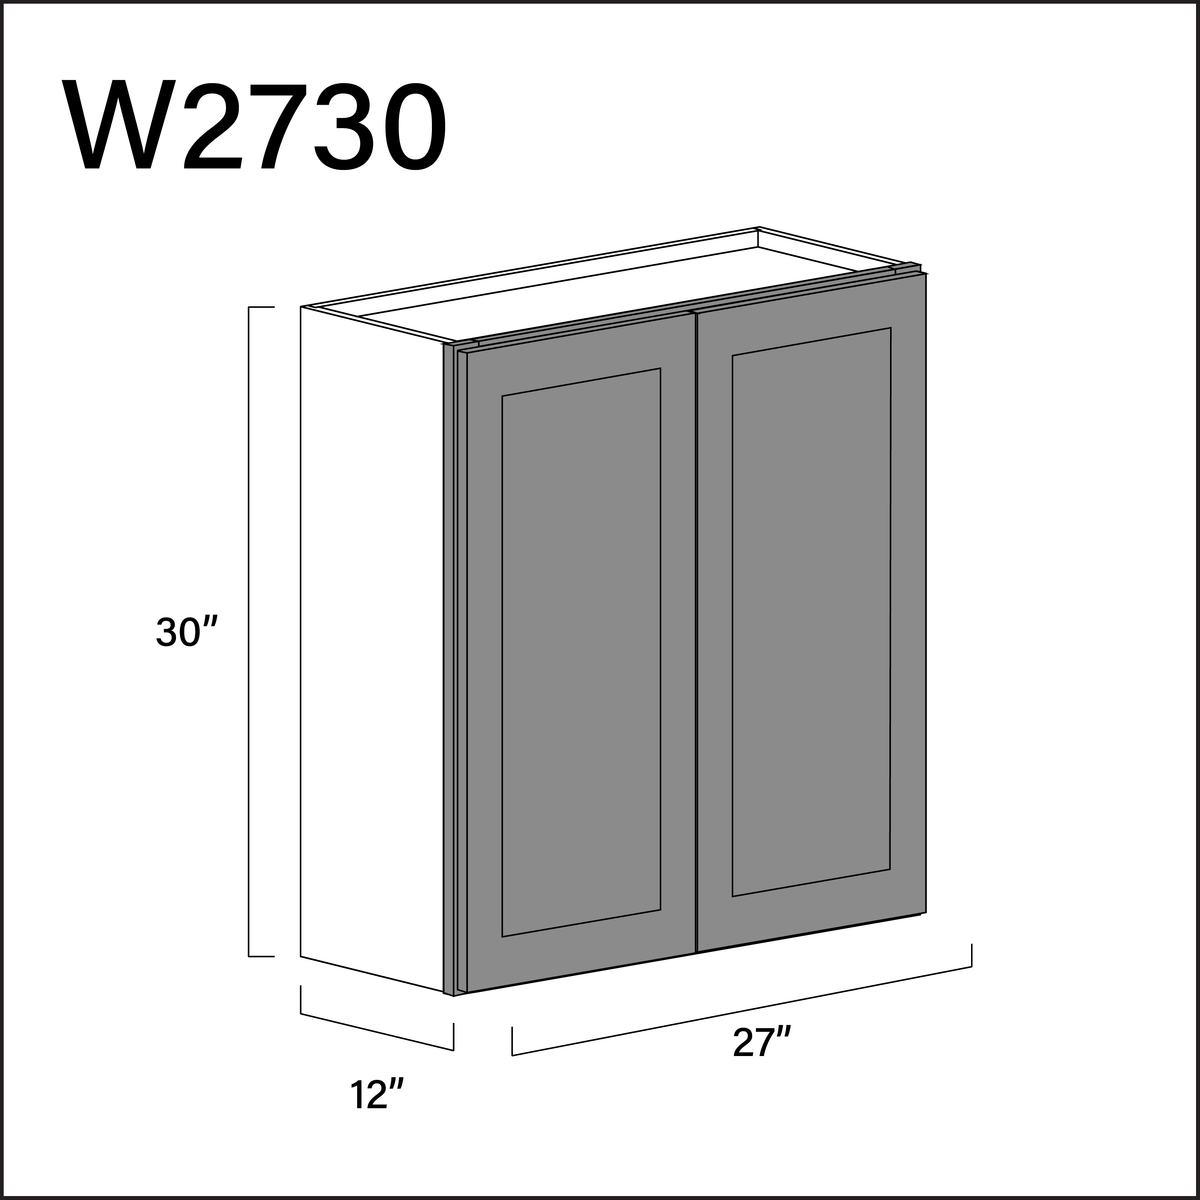 Gray Shaker Double Door Wall Cabinet - 27" W x 30" H x 12" D